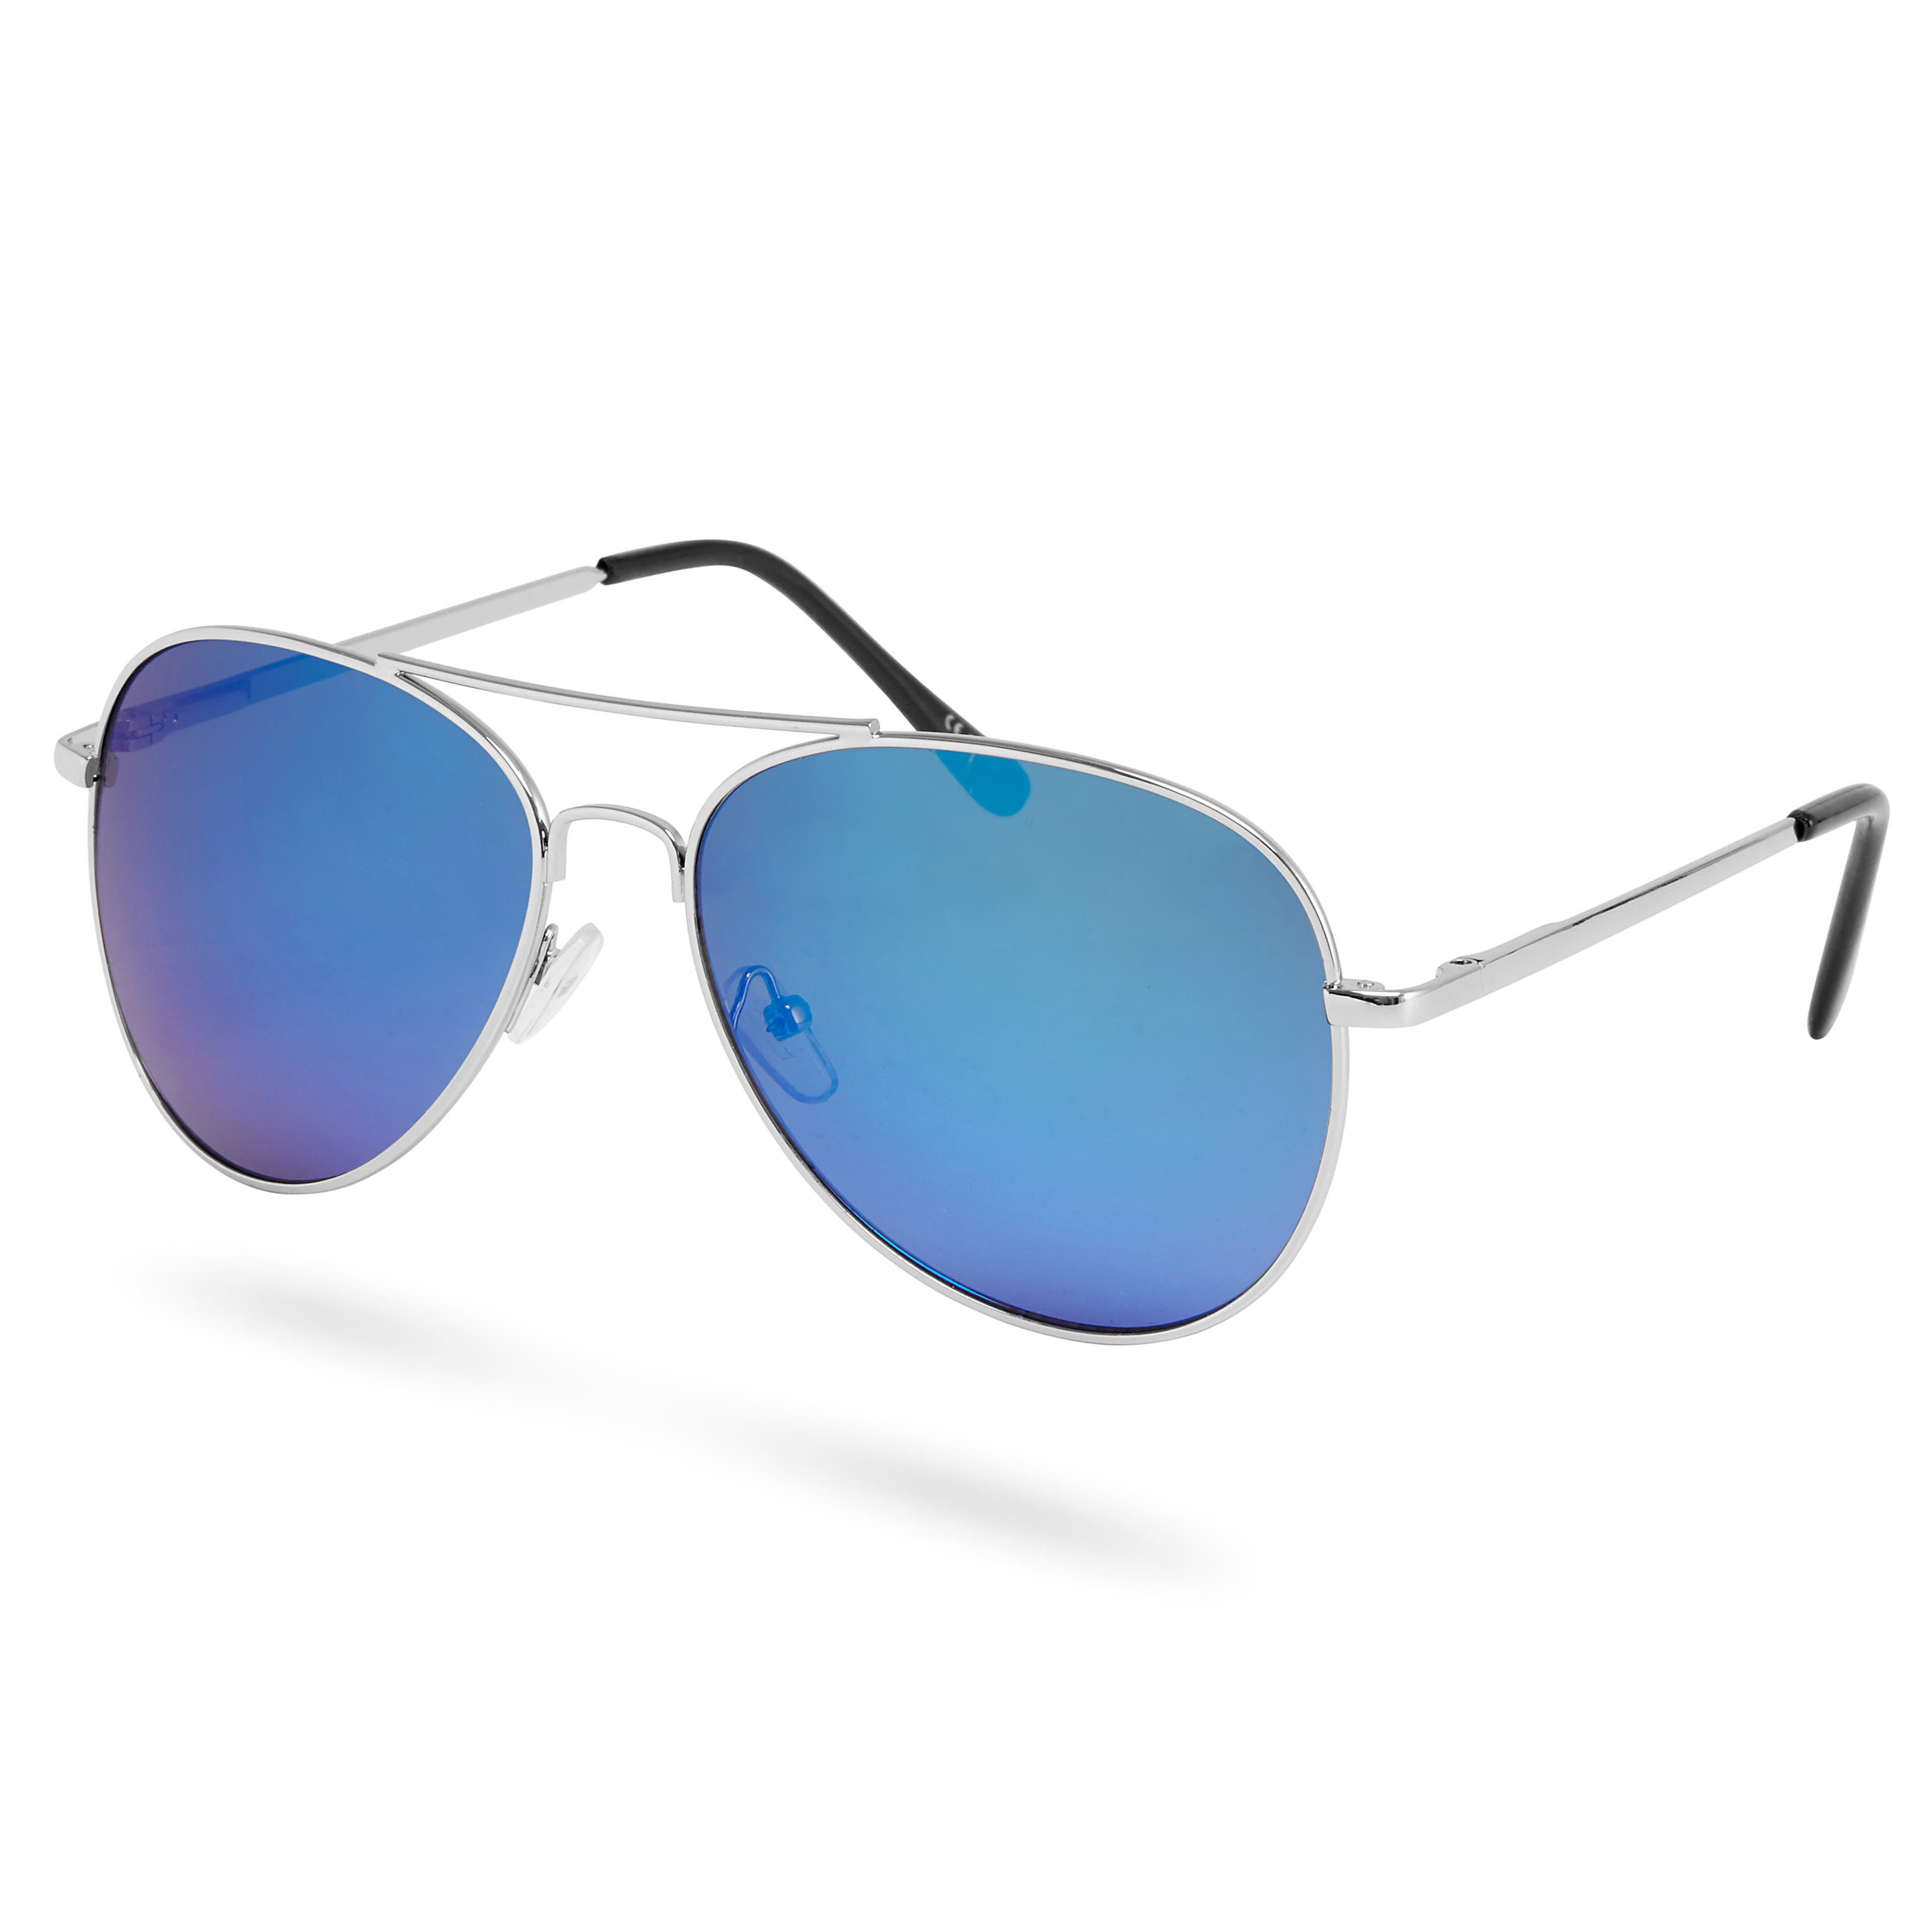 Zrkadlové slnečné okuliare aviator v striebornej a modrej farbe